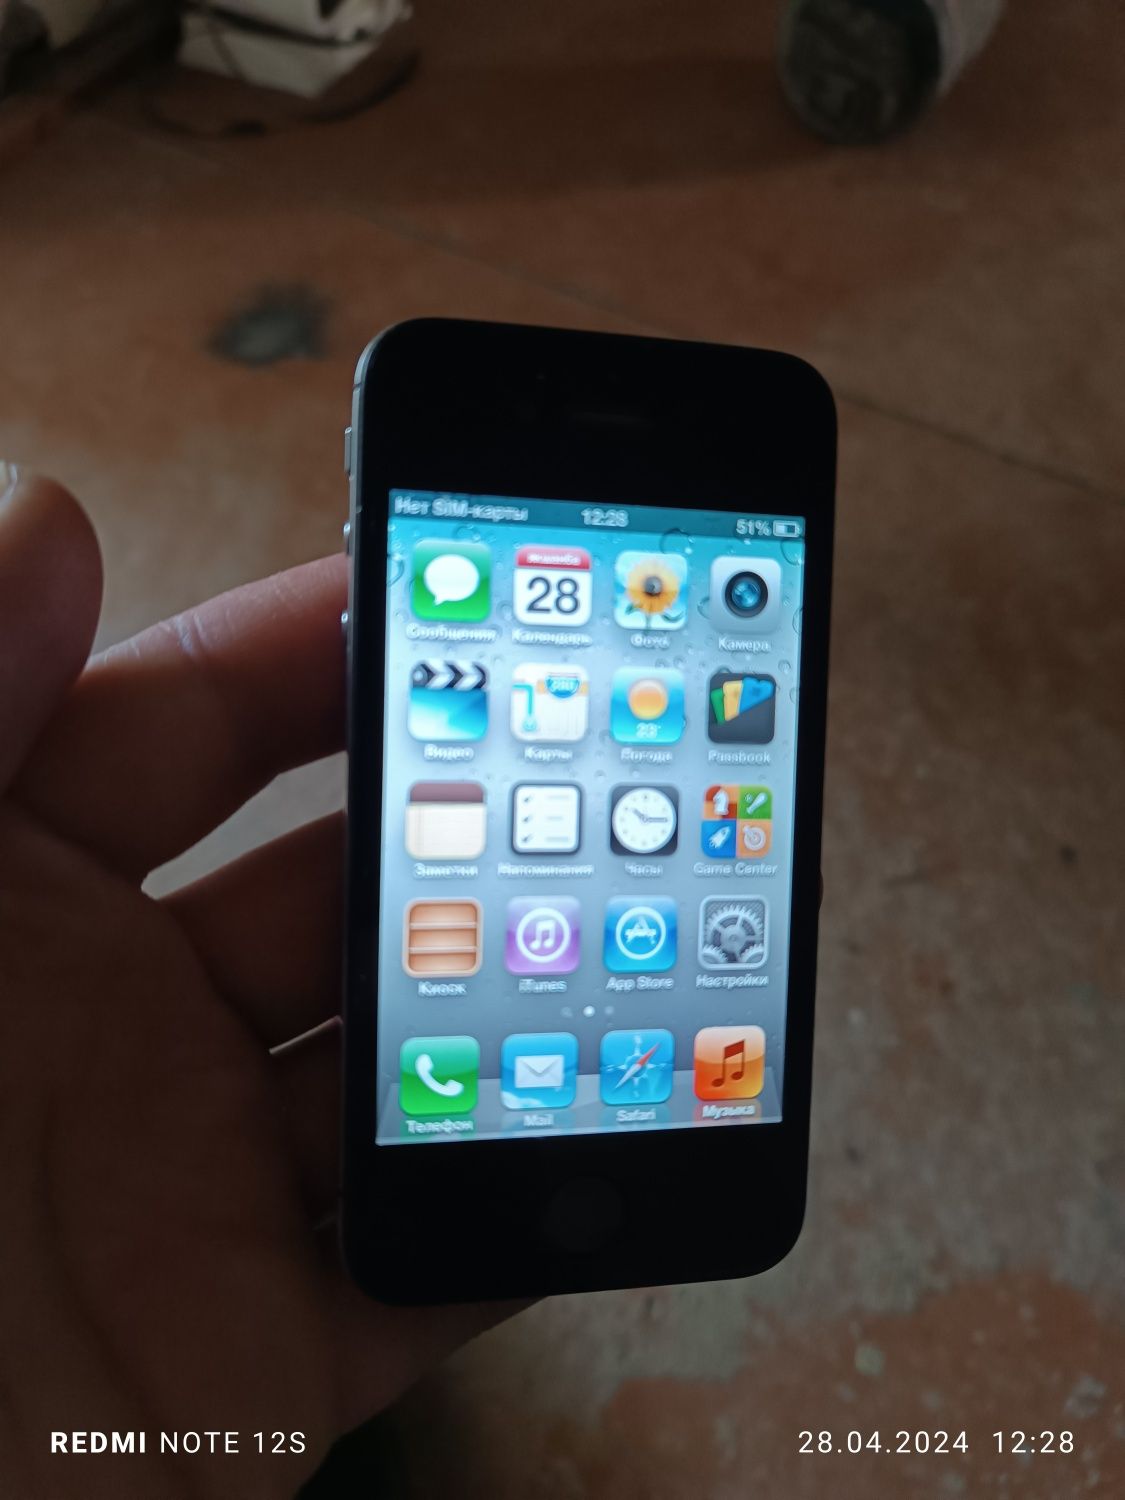 Iphone 4s 32gb iOS 6.1.3 sotiladi